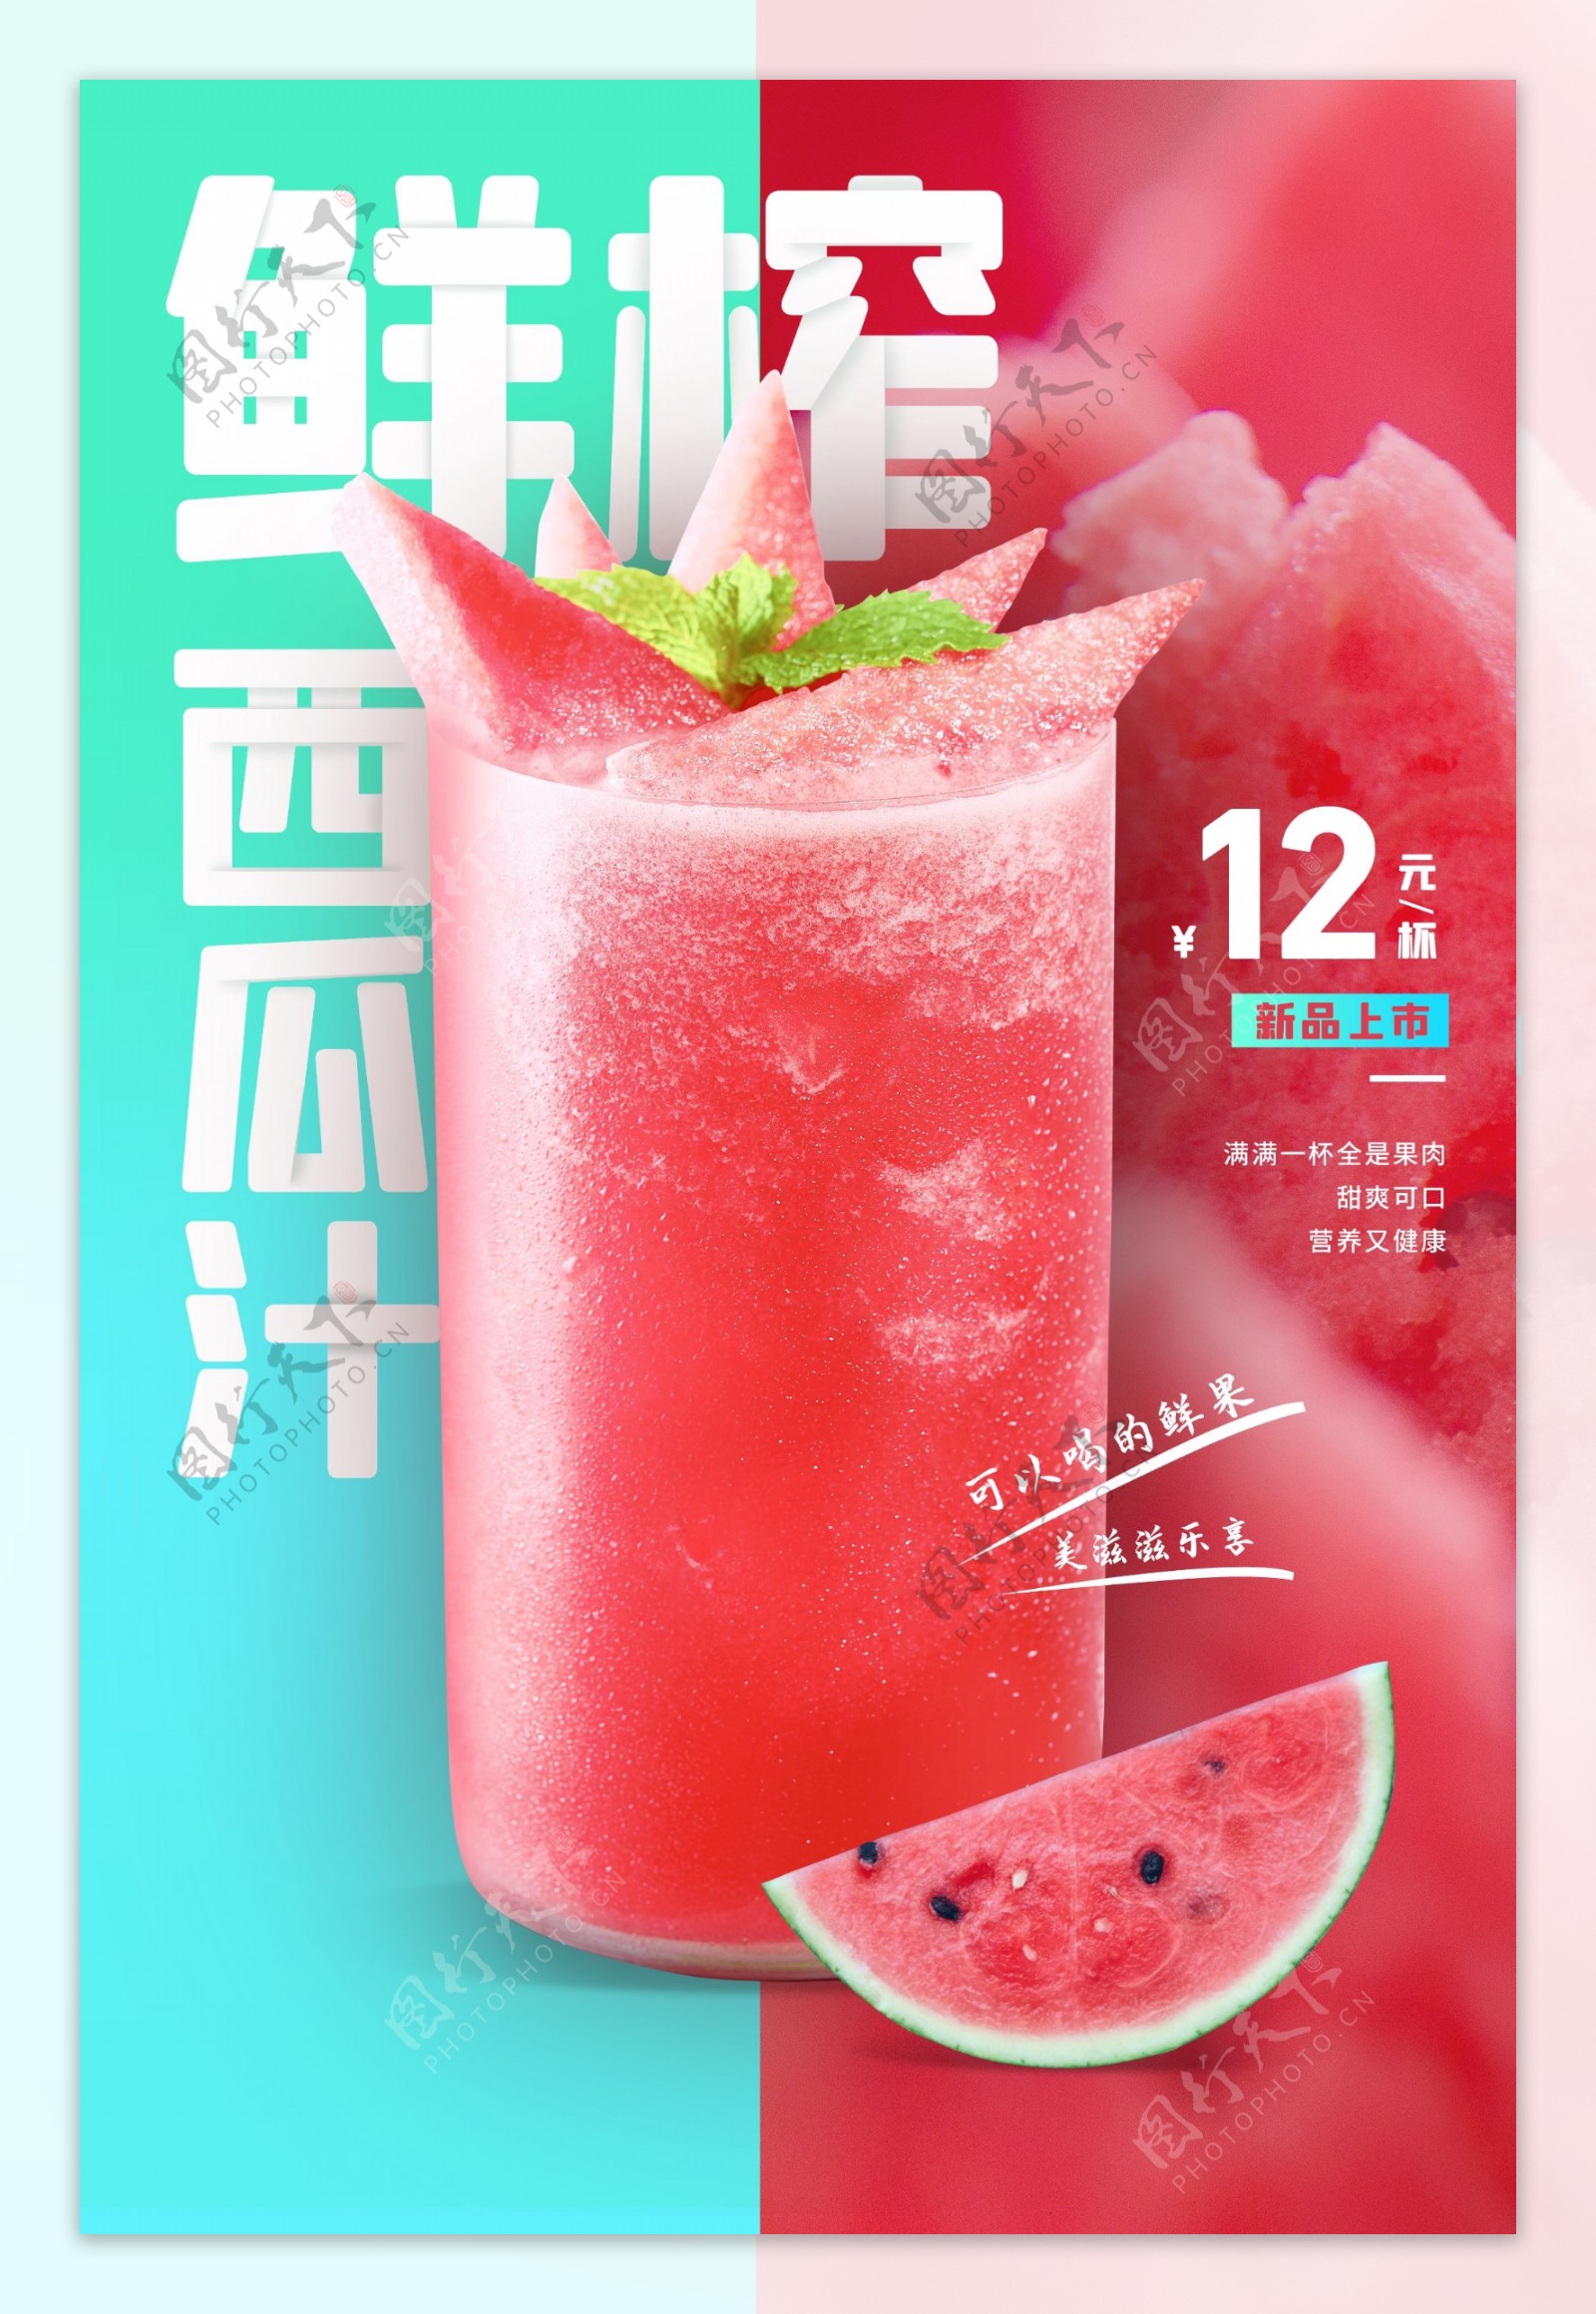 西瓜汁饮品活动宣传海报素材